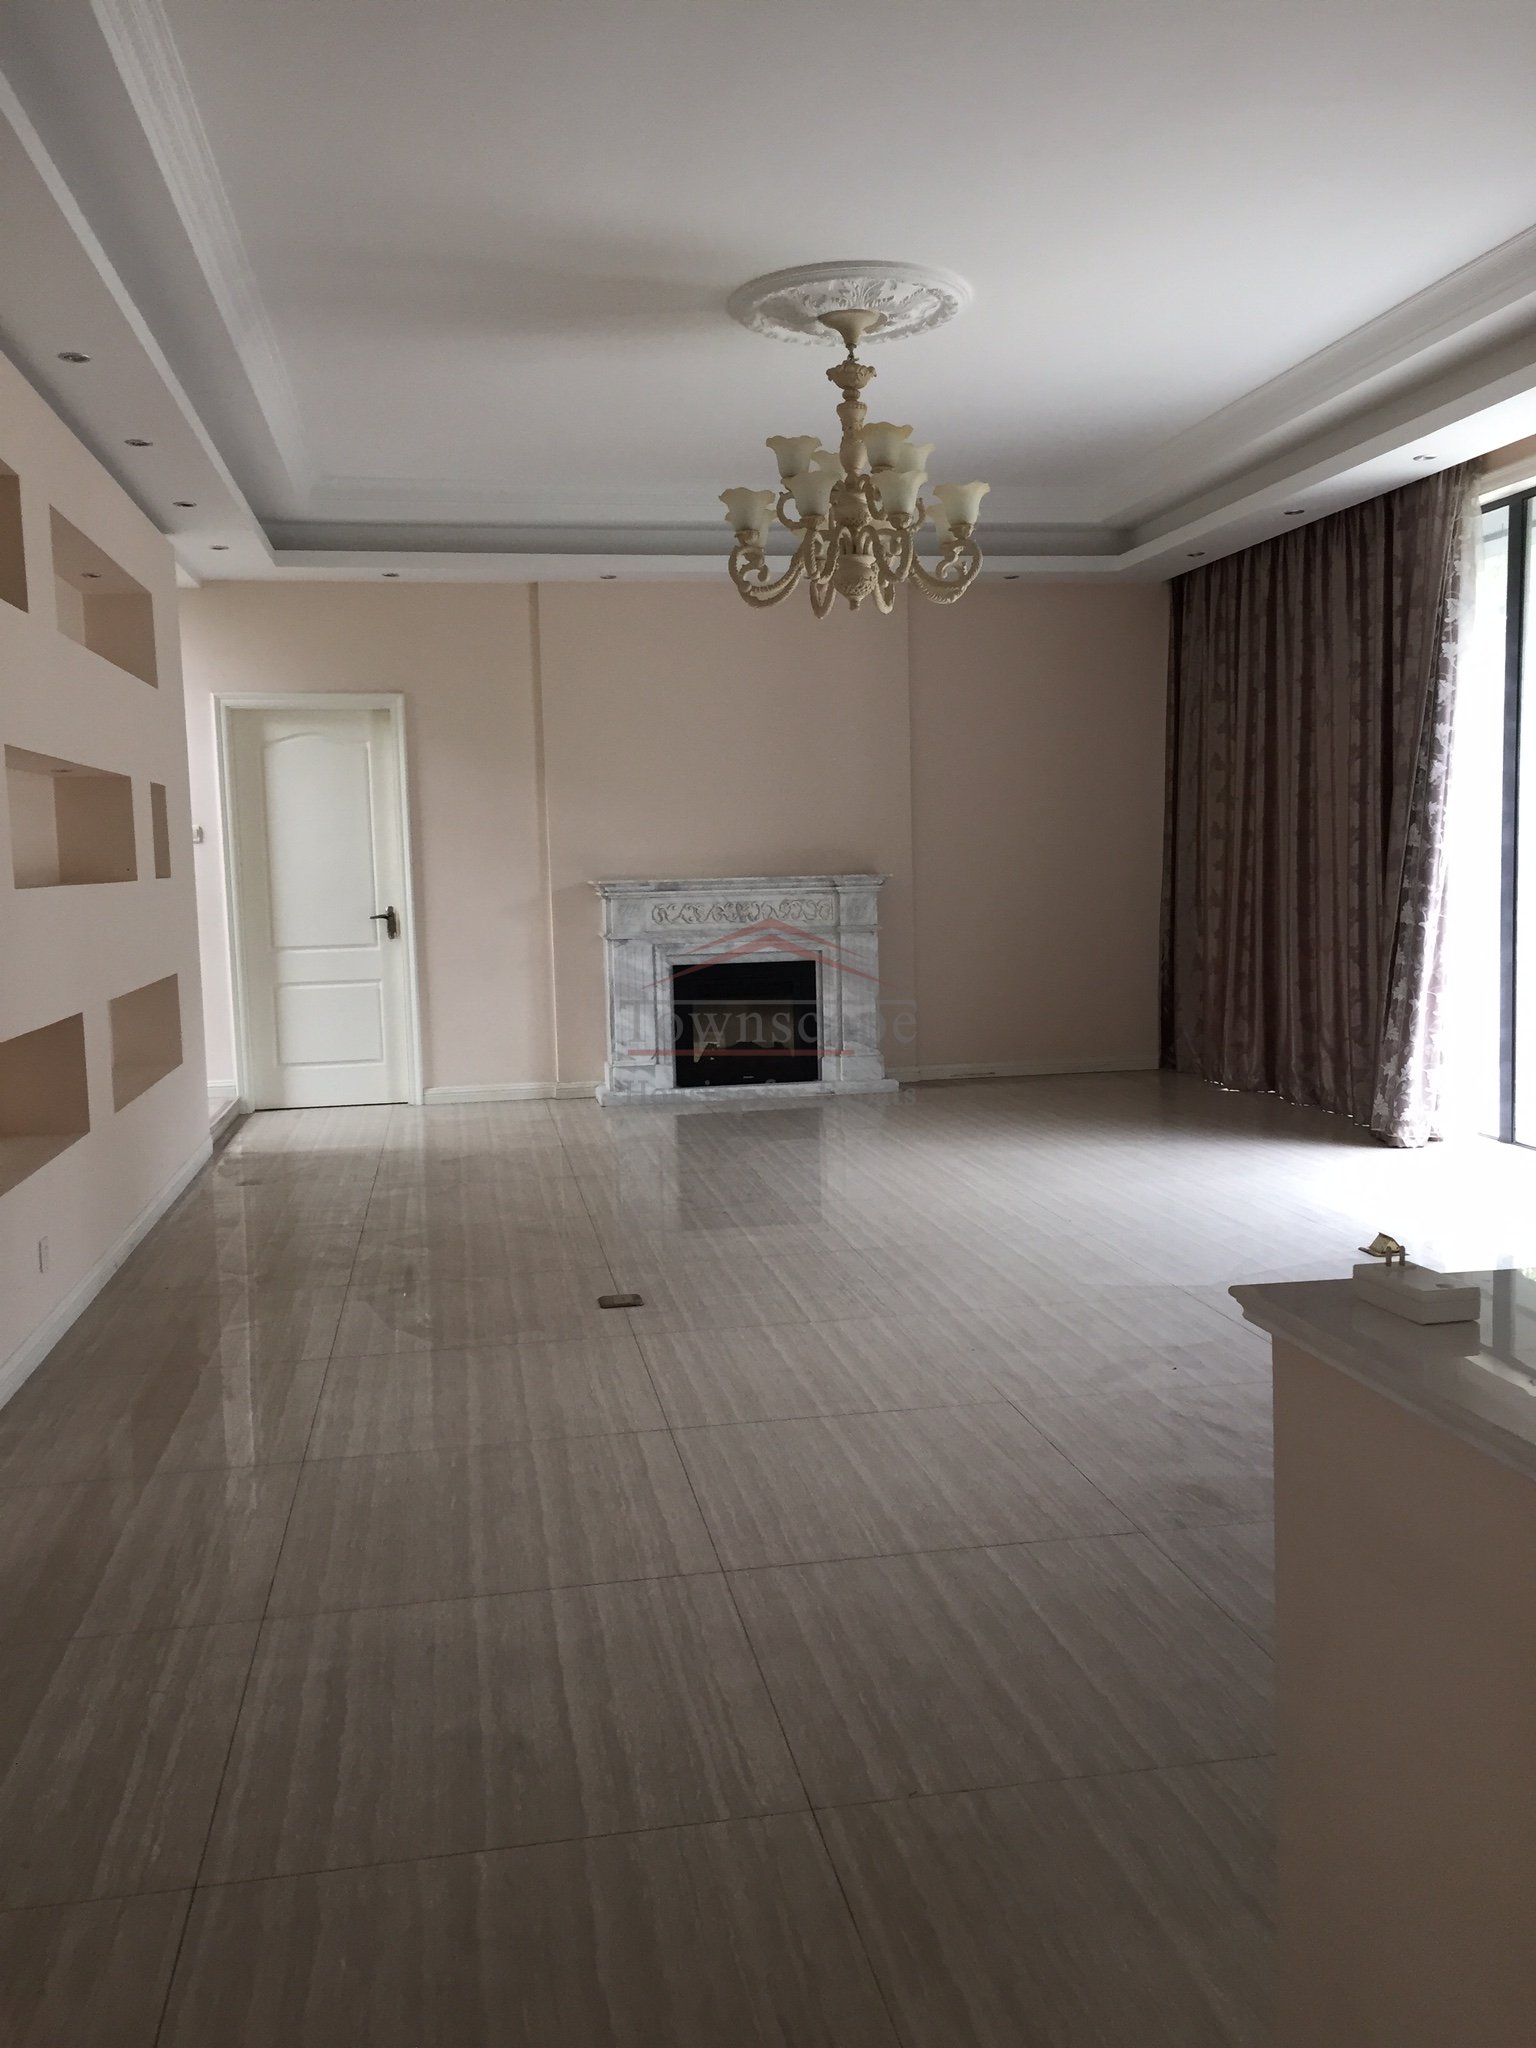  Excellent 4 bed Villa w/ floor heating in Qingpu